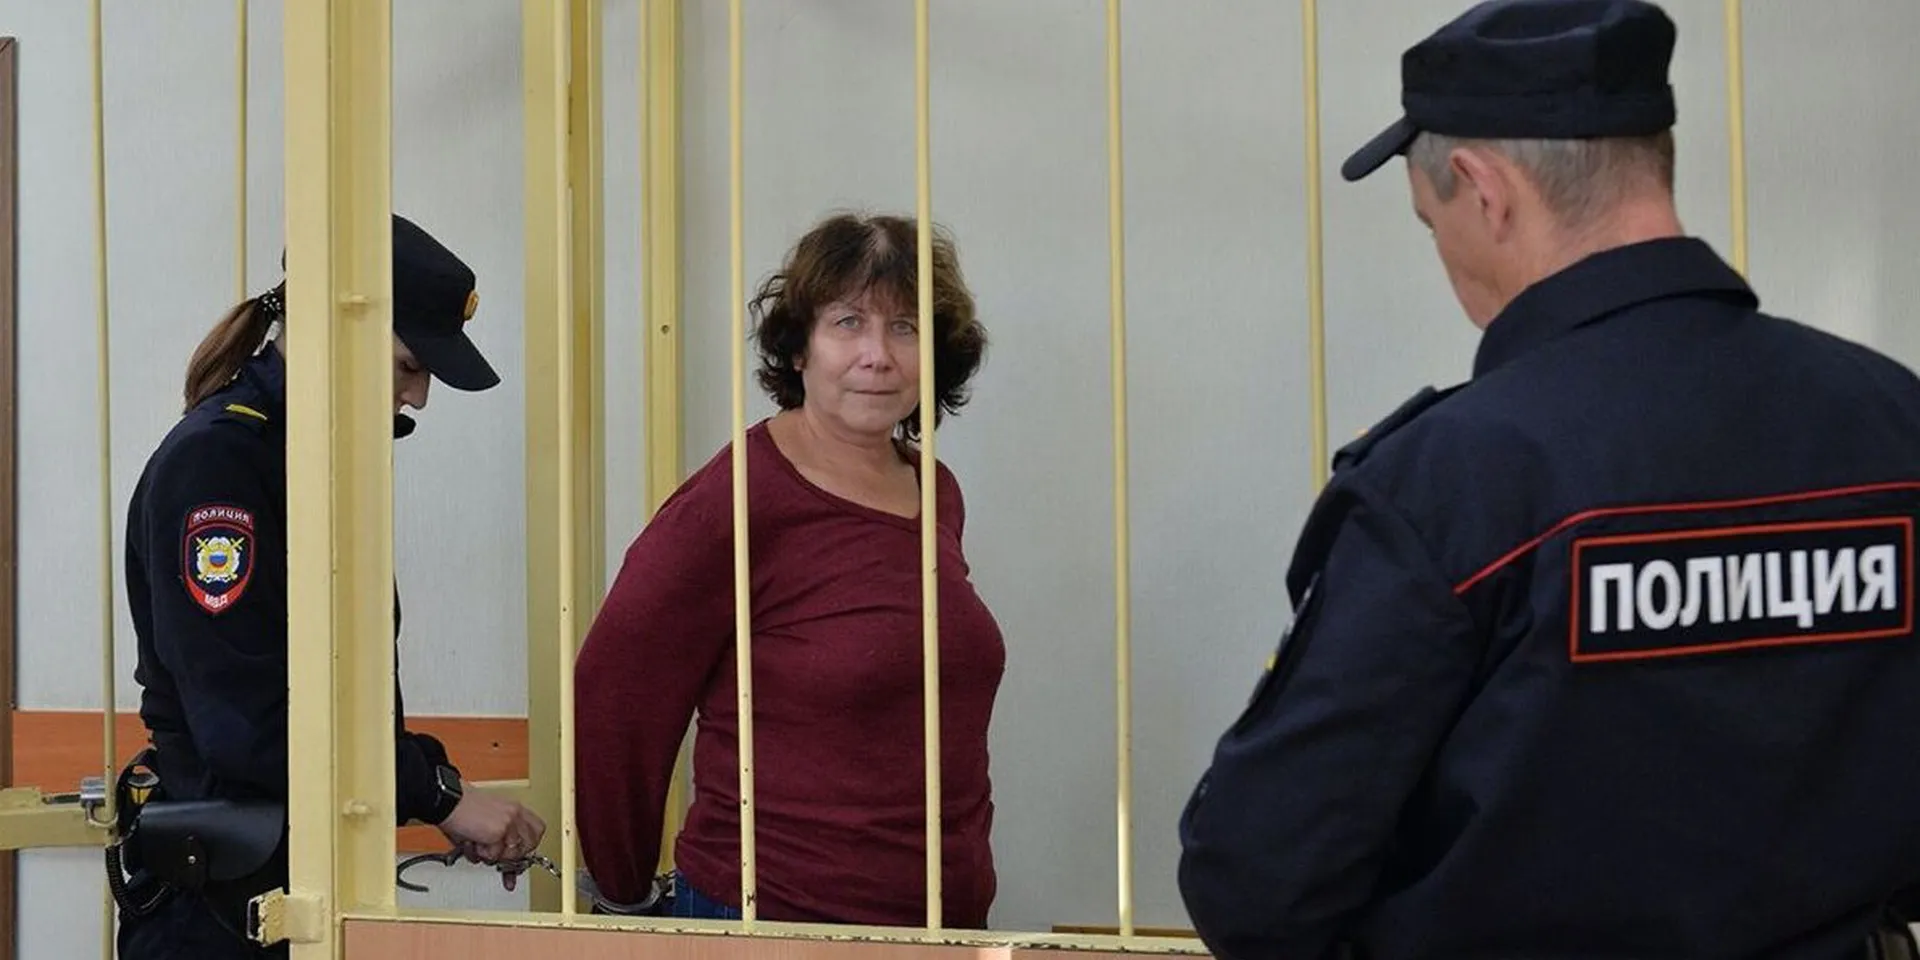 Суд Петербурга осудил 61-летнюю женщину за записку на могиле родителей Путина с пожеланием ему смерти